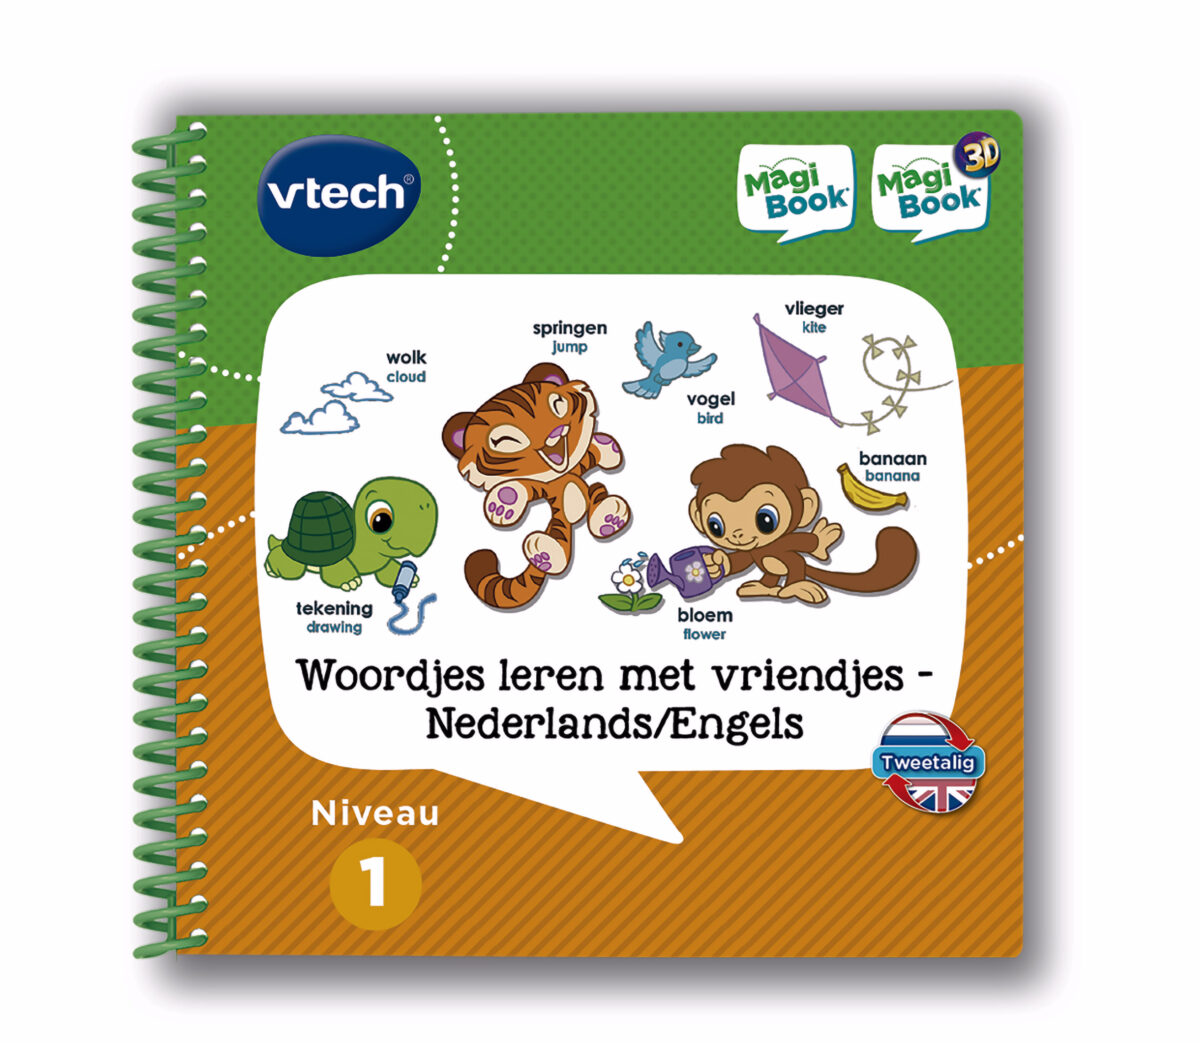 Vtech MagiBook - Woordjes leren met vriendjes NL-EN